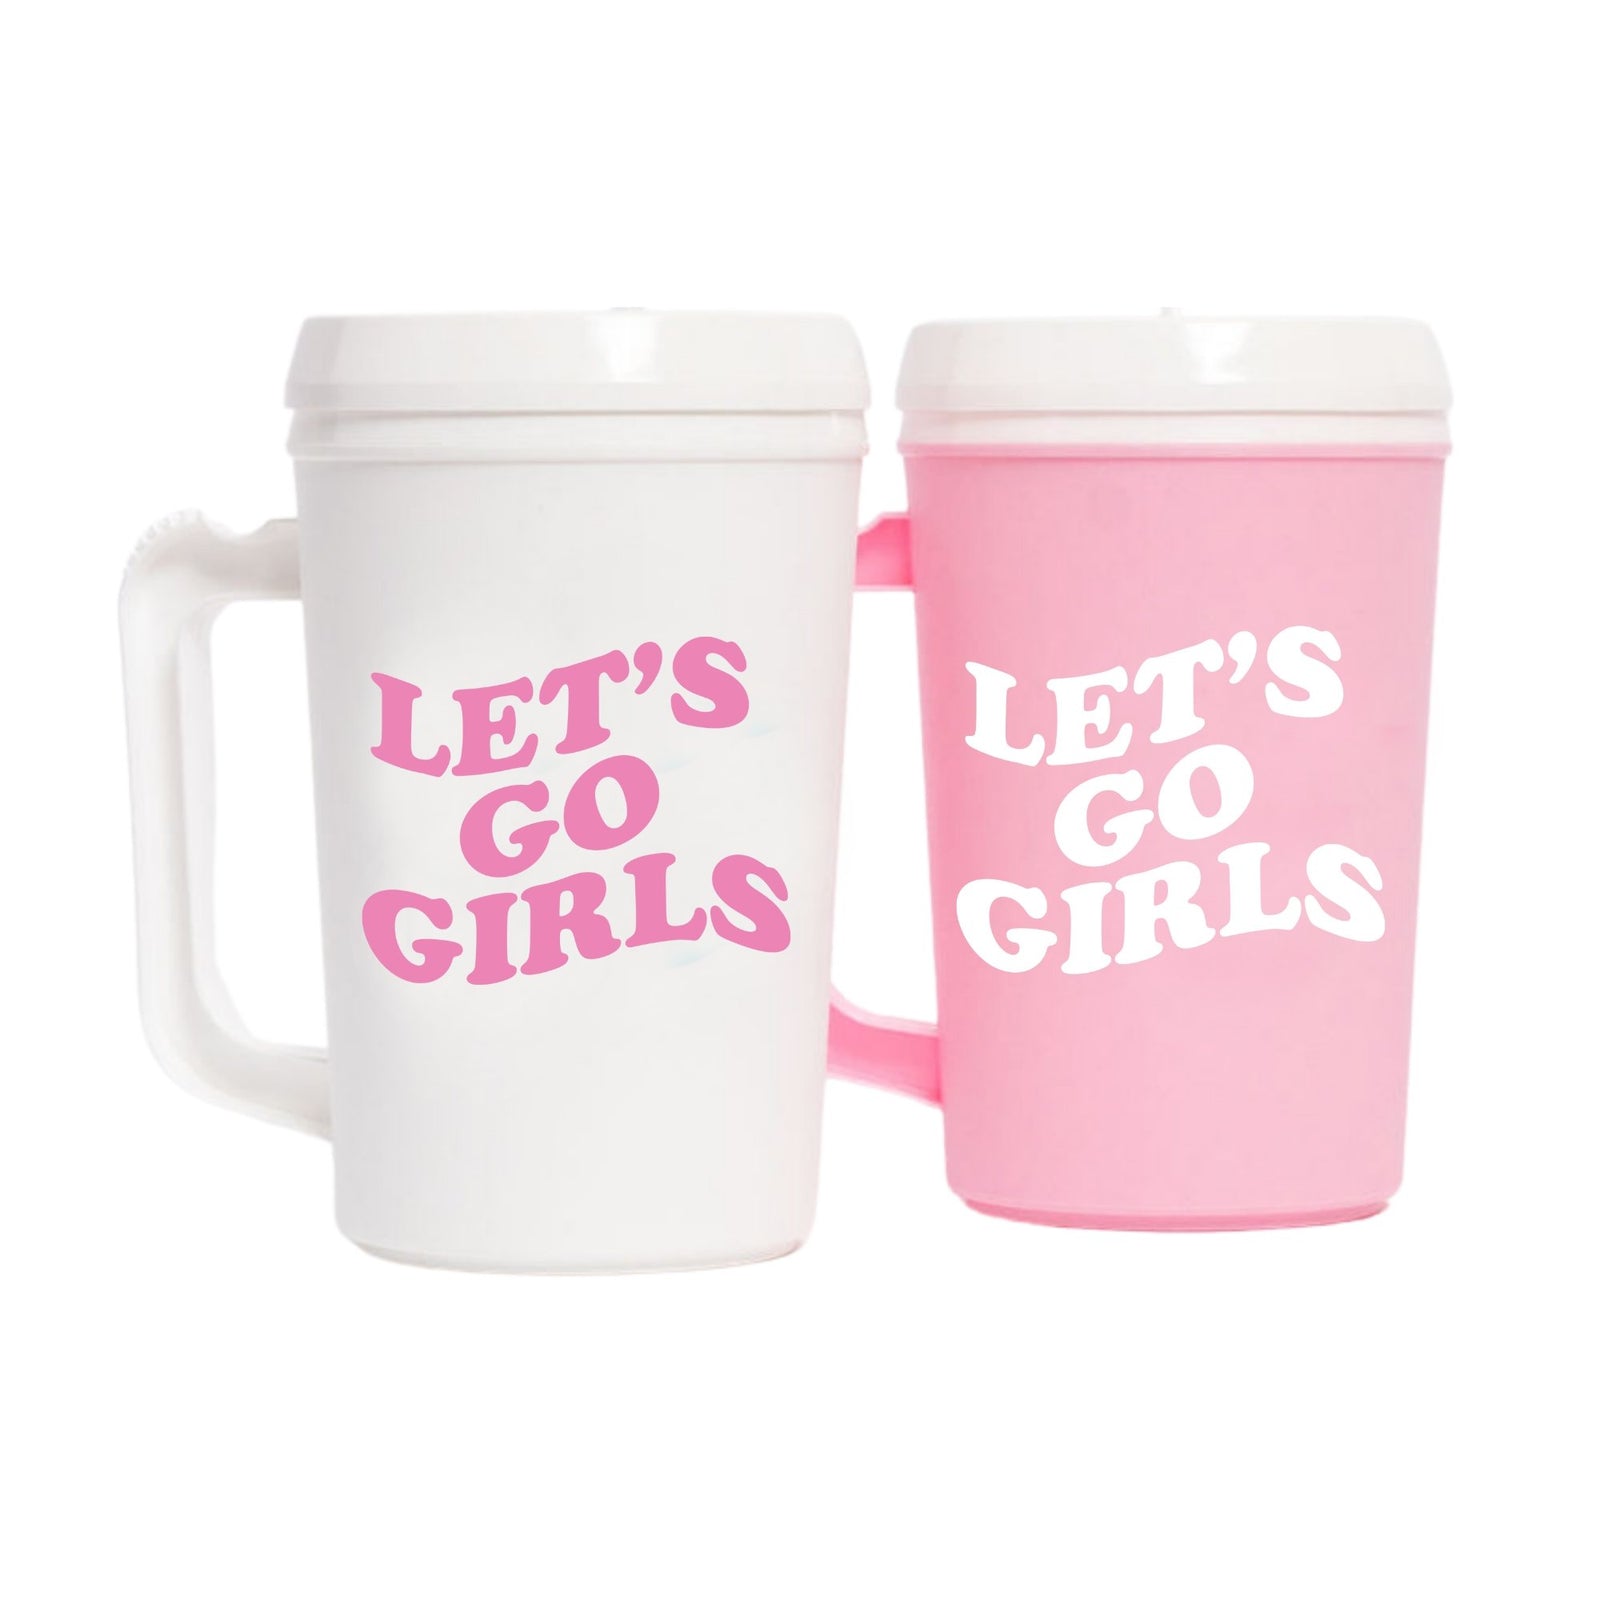 https://www.sprinkledwithpinkshop.com/cdn/shop/products/lets-go-girls-mega-mug-511268_1600x.jpg?v=1659516873